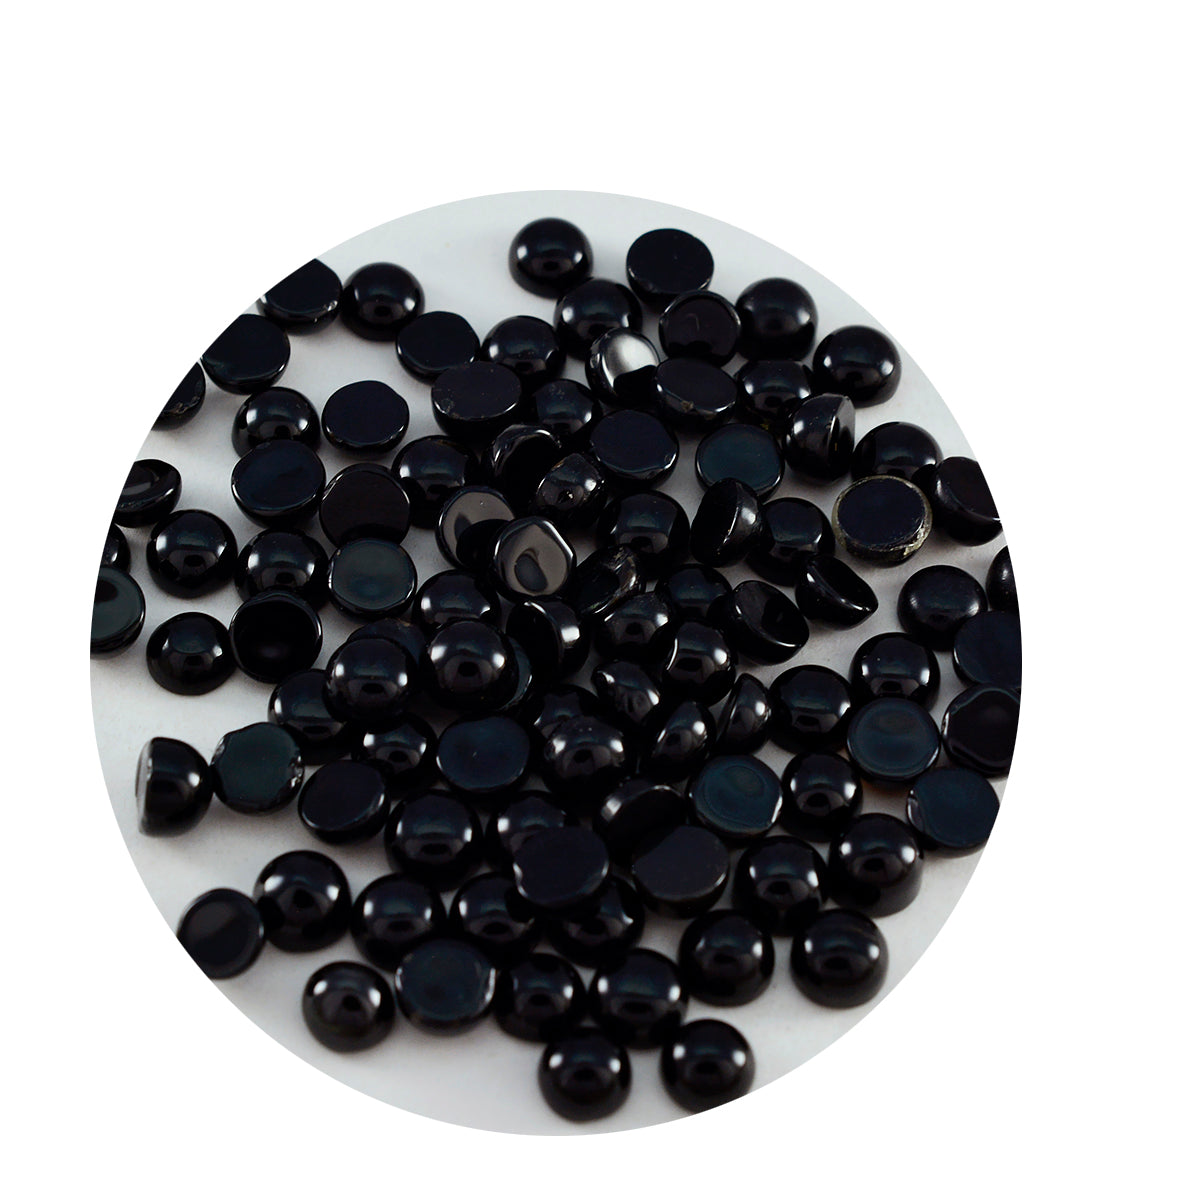 Riyogems 1pc cabochon onyx noir 4x4 mm forme ronde a + qualité pierres précieuses en vrac